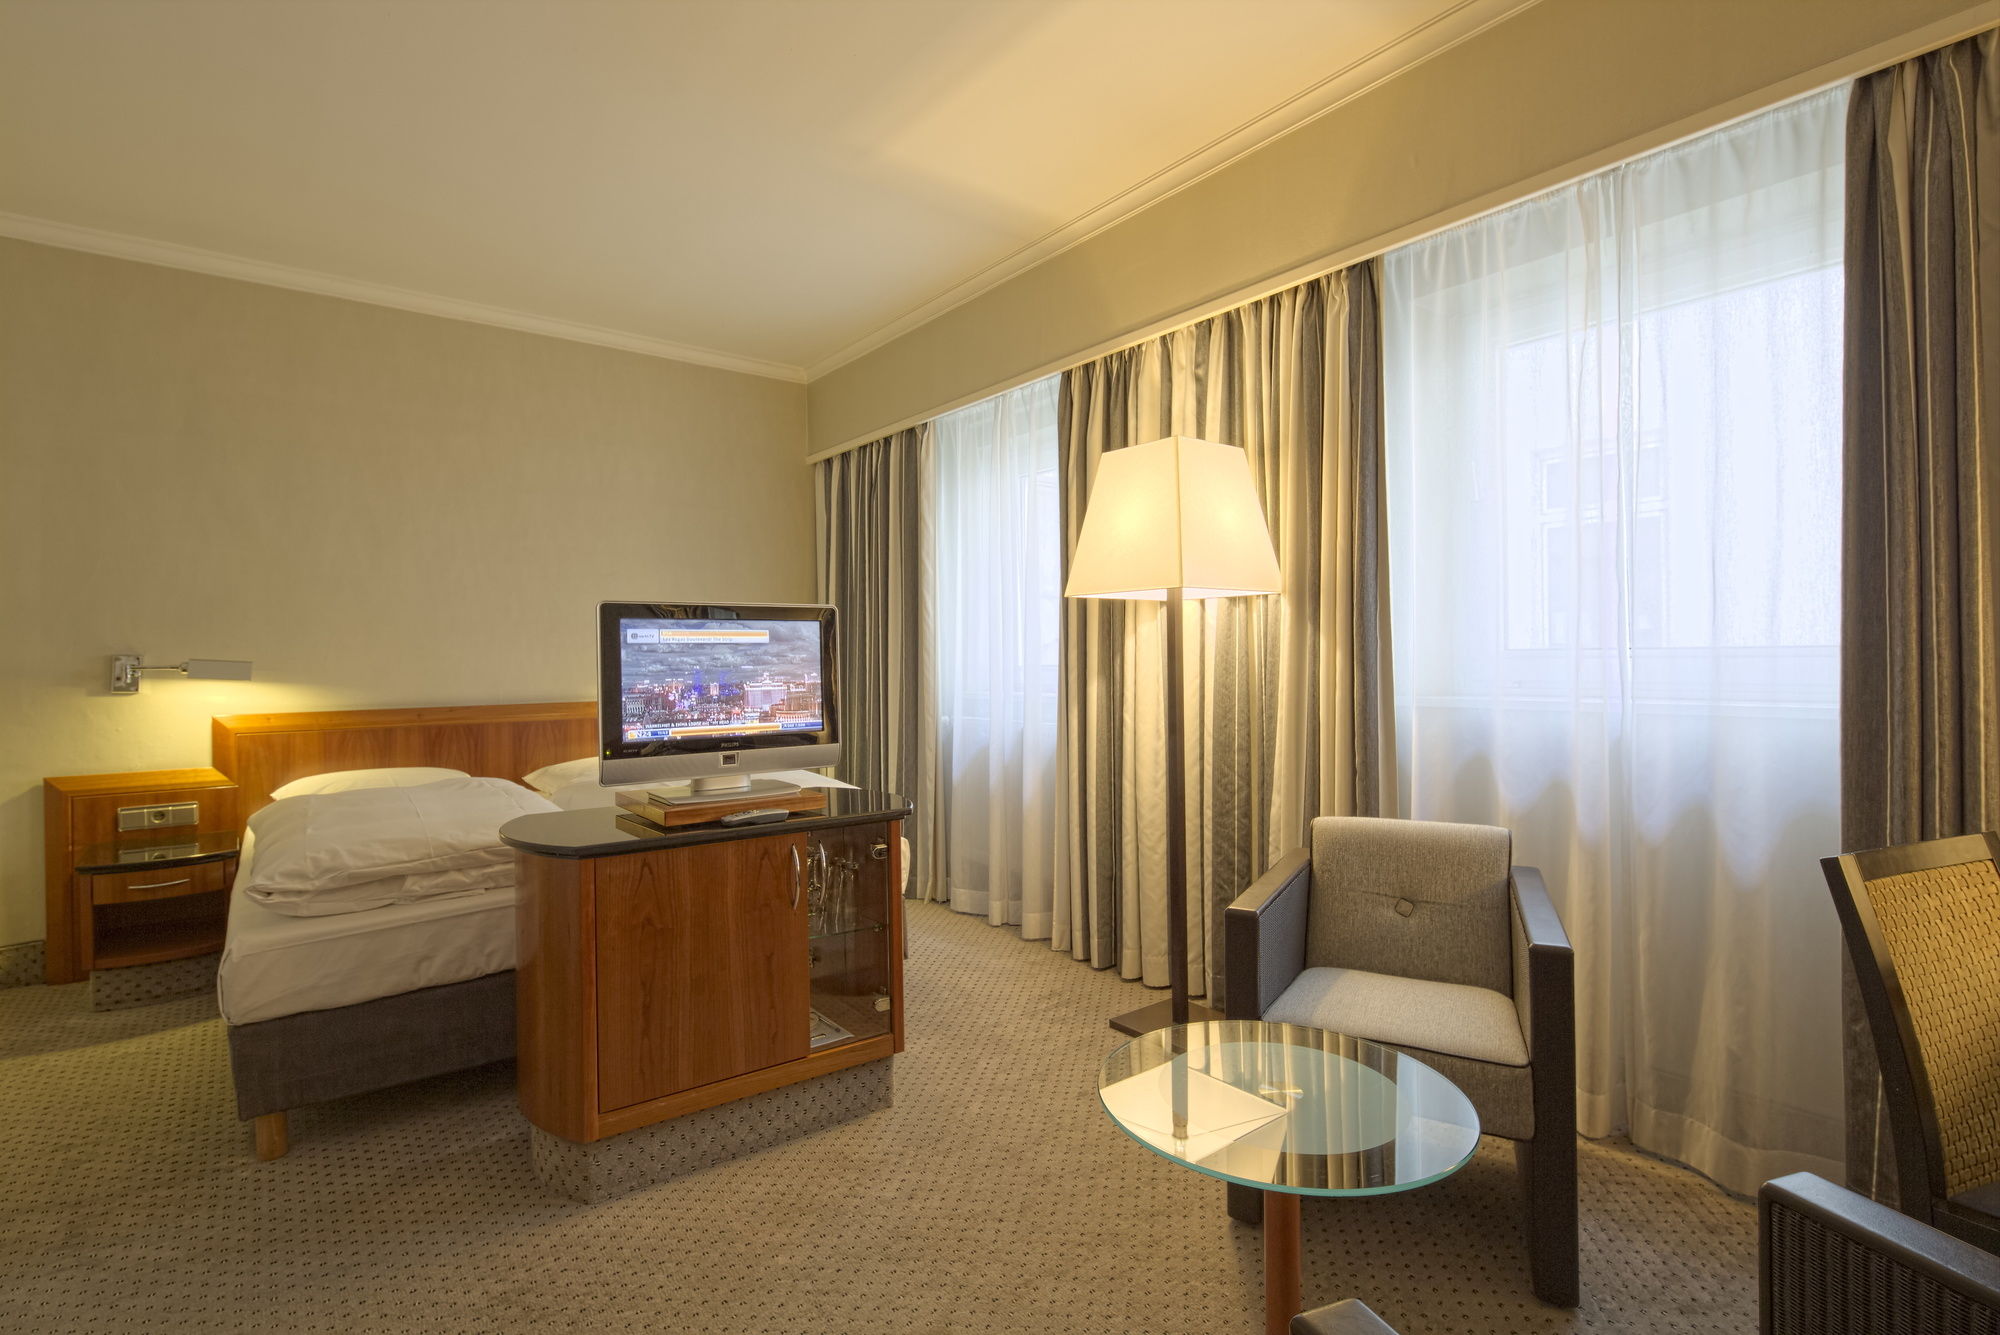 Hotel Europäischer Hof <br/>194.44 ew <br/> <a href='http://vakantieoplossing.nl/outpage/?id=25f99ae2da0981b50a7fb48a245e26ca' target='_blank'>View Details</a>